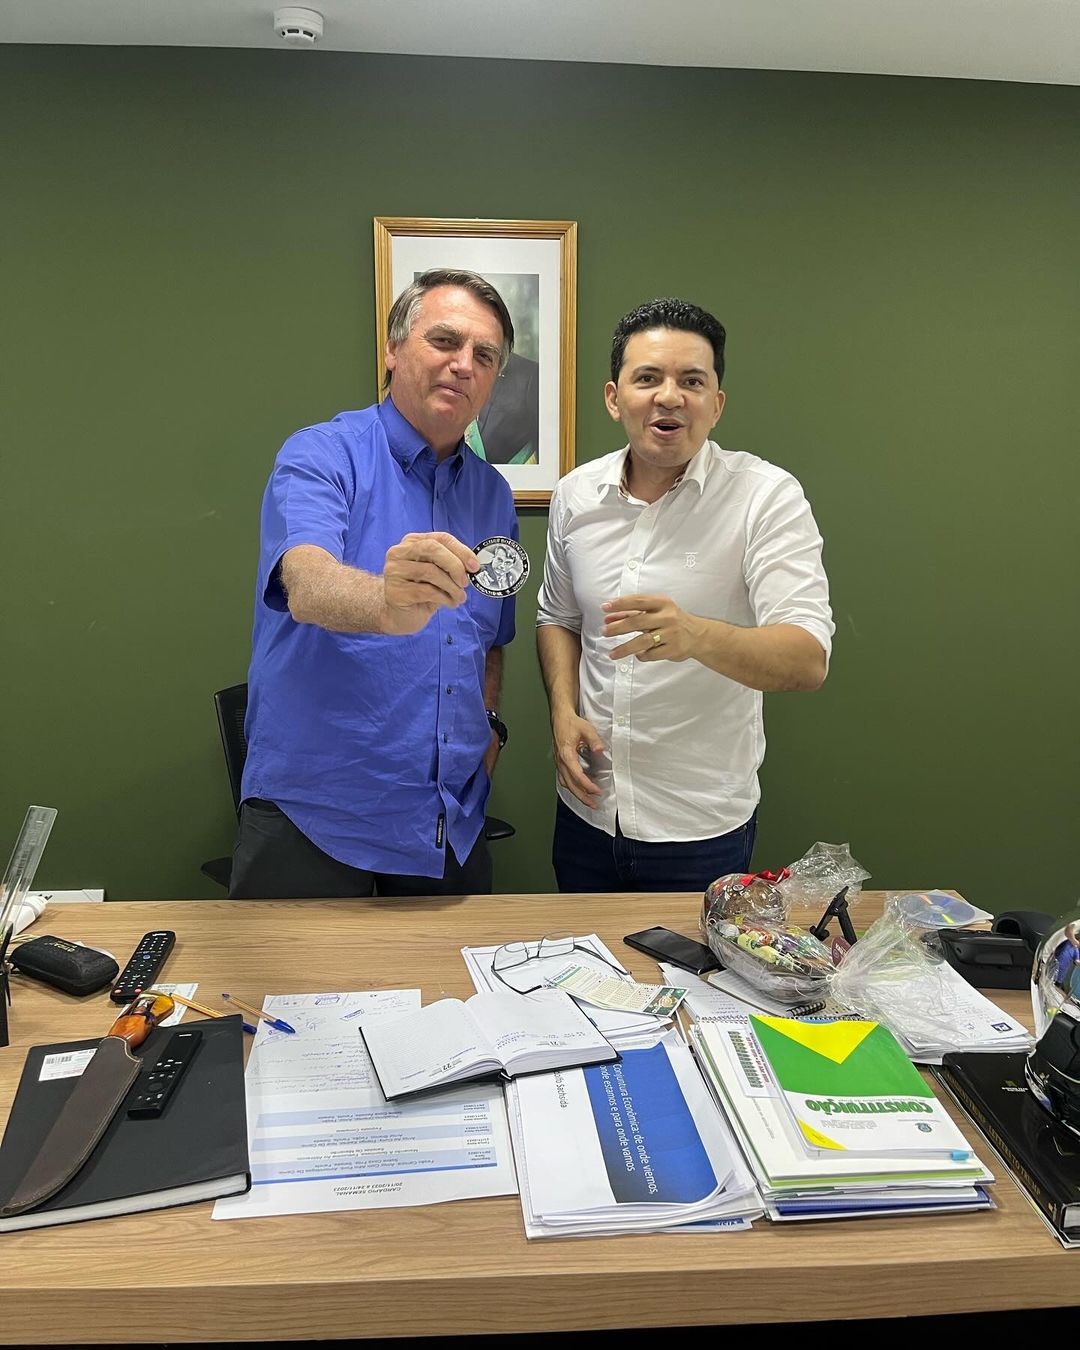 Ambos do Partido Liberal, se encontraram em Brasília - Foto: Reprodução/Instagram @delegadopericles